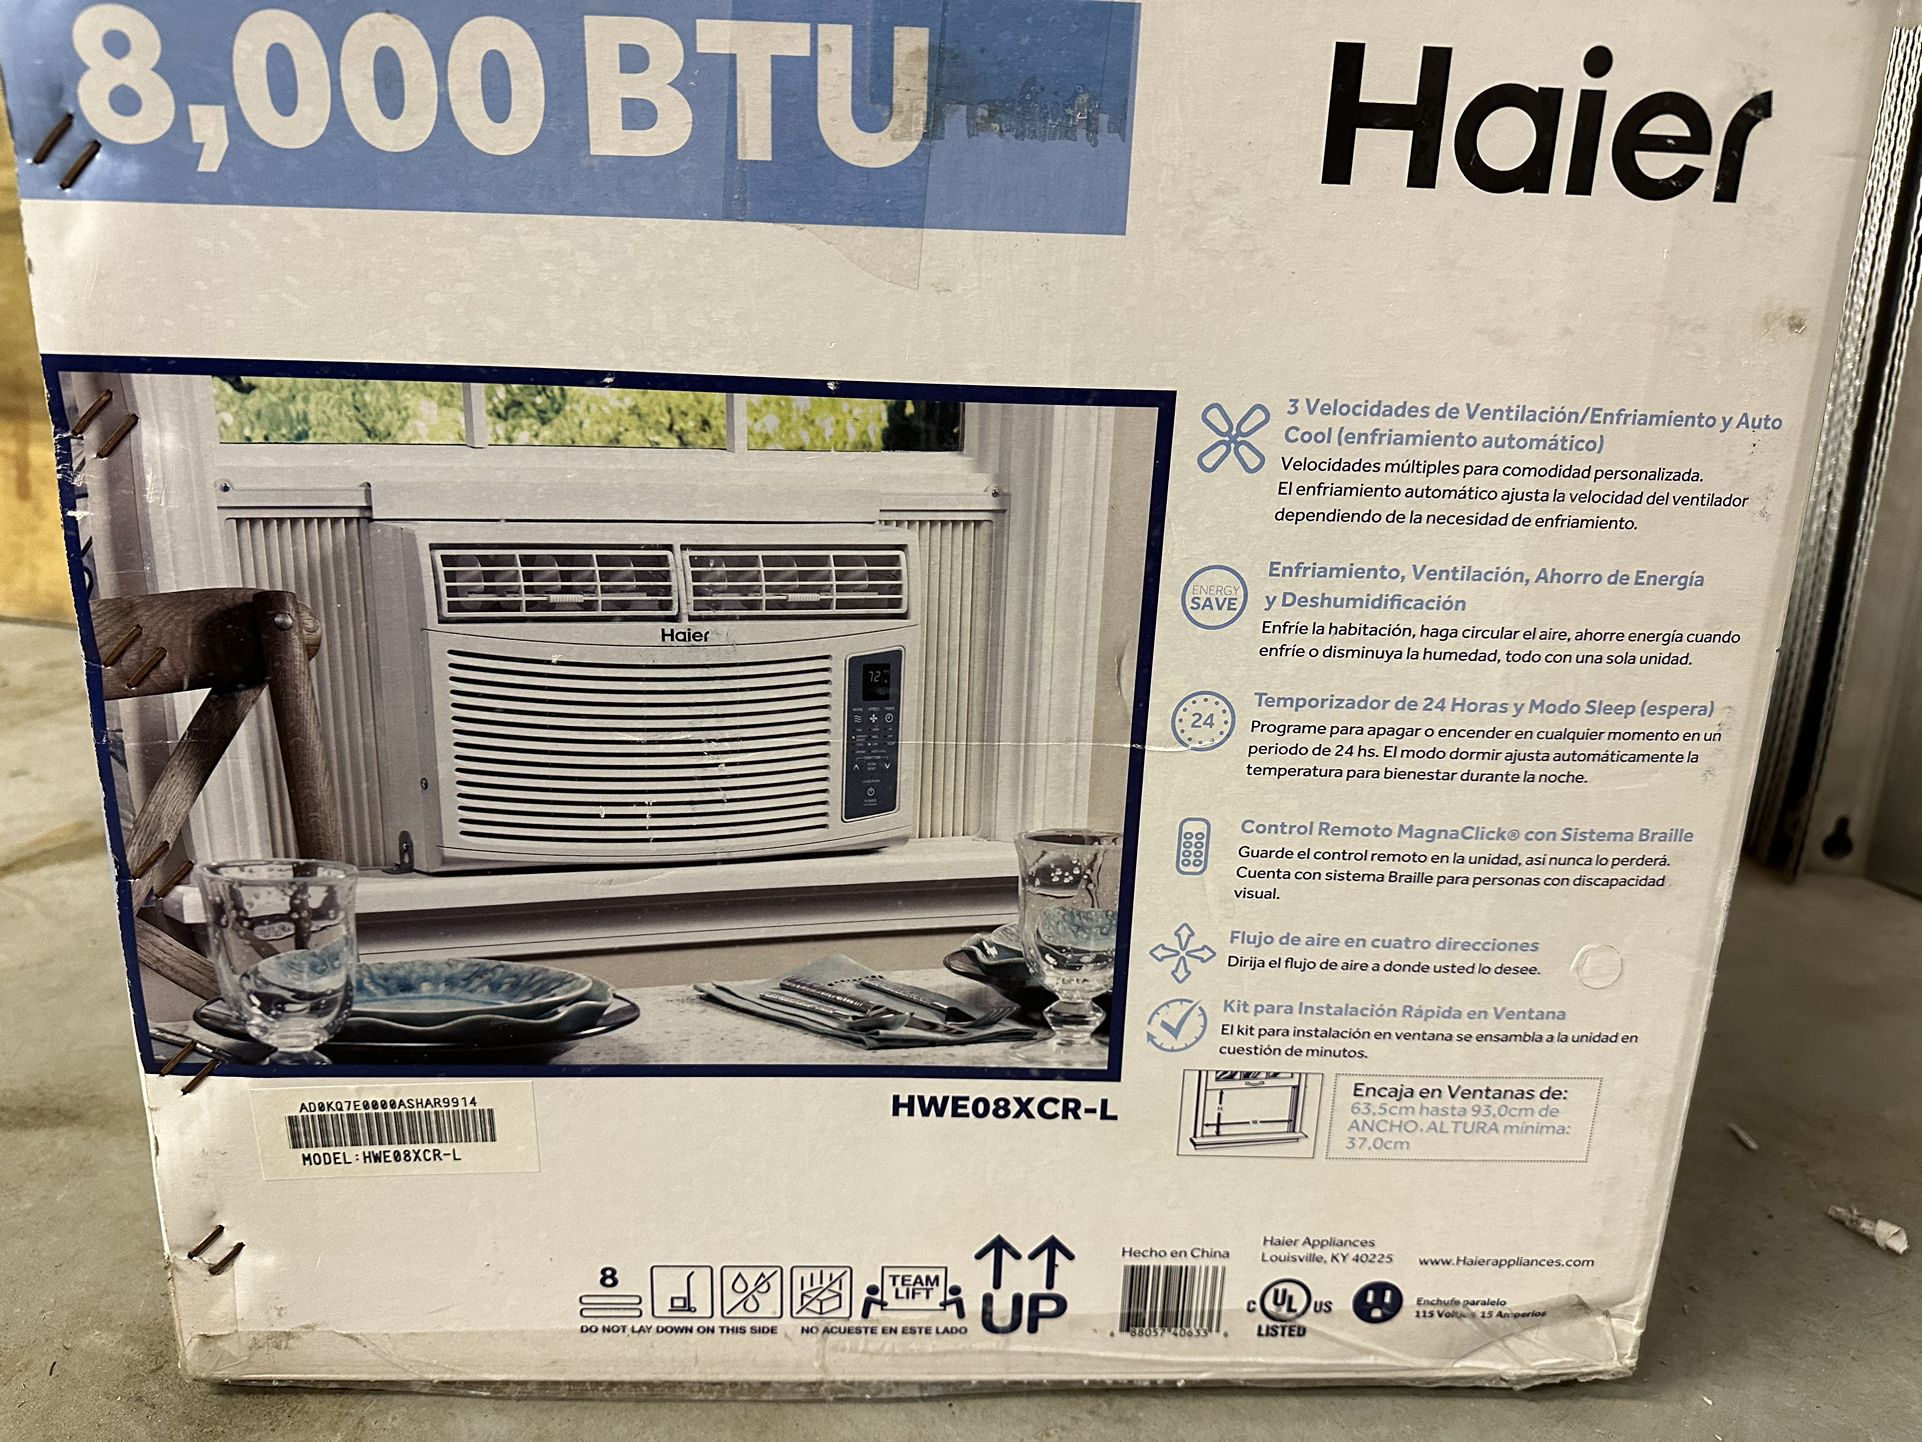 Haier 8,000 BTU Window Air Conditioner NIB